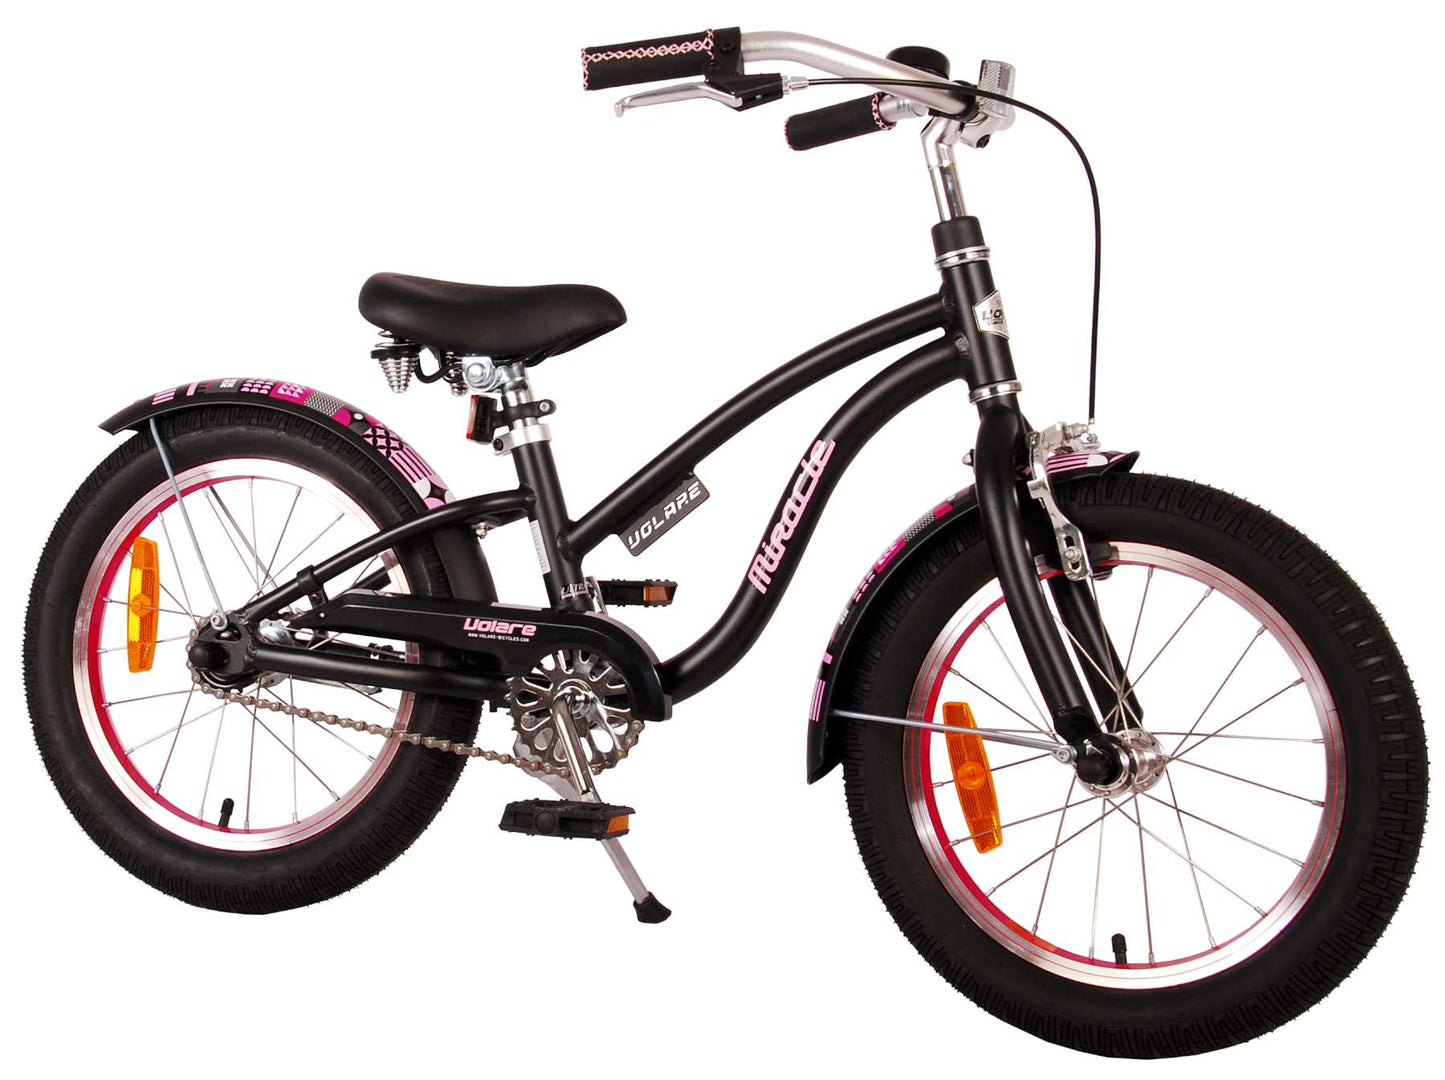 Bicycle per bambini di Vlatare Miracle Cruiser - Girls - 16 pollici - Matt Black - Collezione Prime